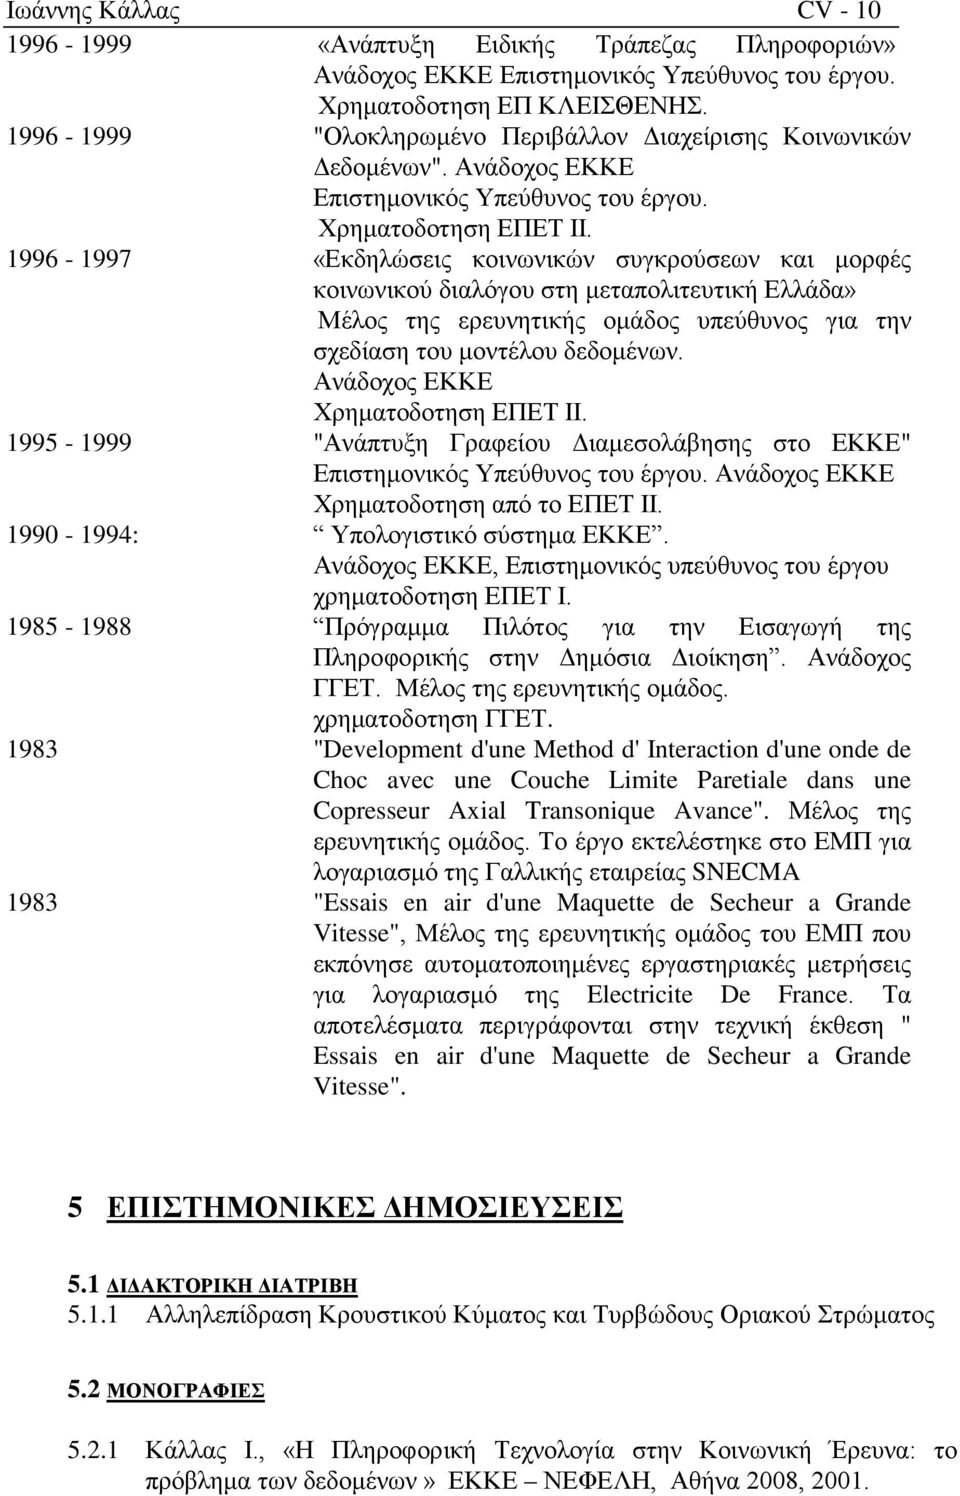 1996-1997 «Εκδηλώσεις κοινωνικών συγκρούσεων και μορφές κοινωνικού διαλόγου στη μεταπολιτευτική Ελλάδα» Μέλος της ερευνητικής ομάδος υπεύθυνος για την σχεδίαση του μοντέλου δεδομένων.